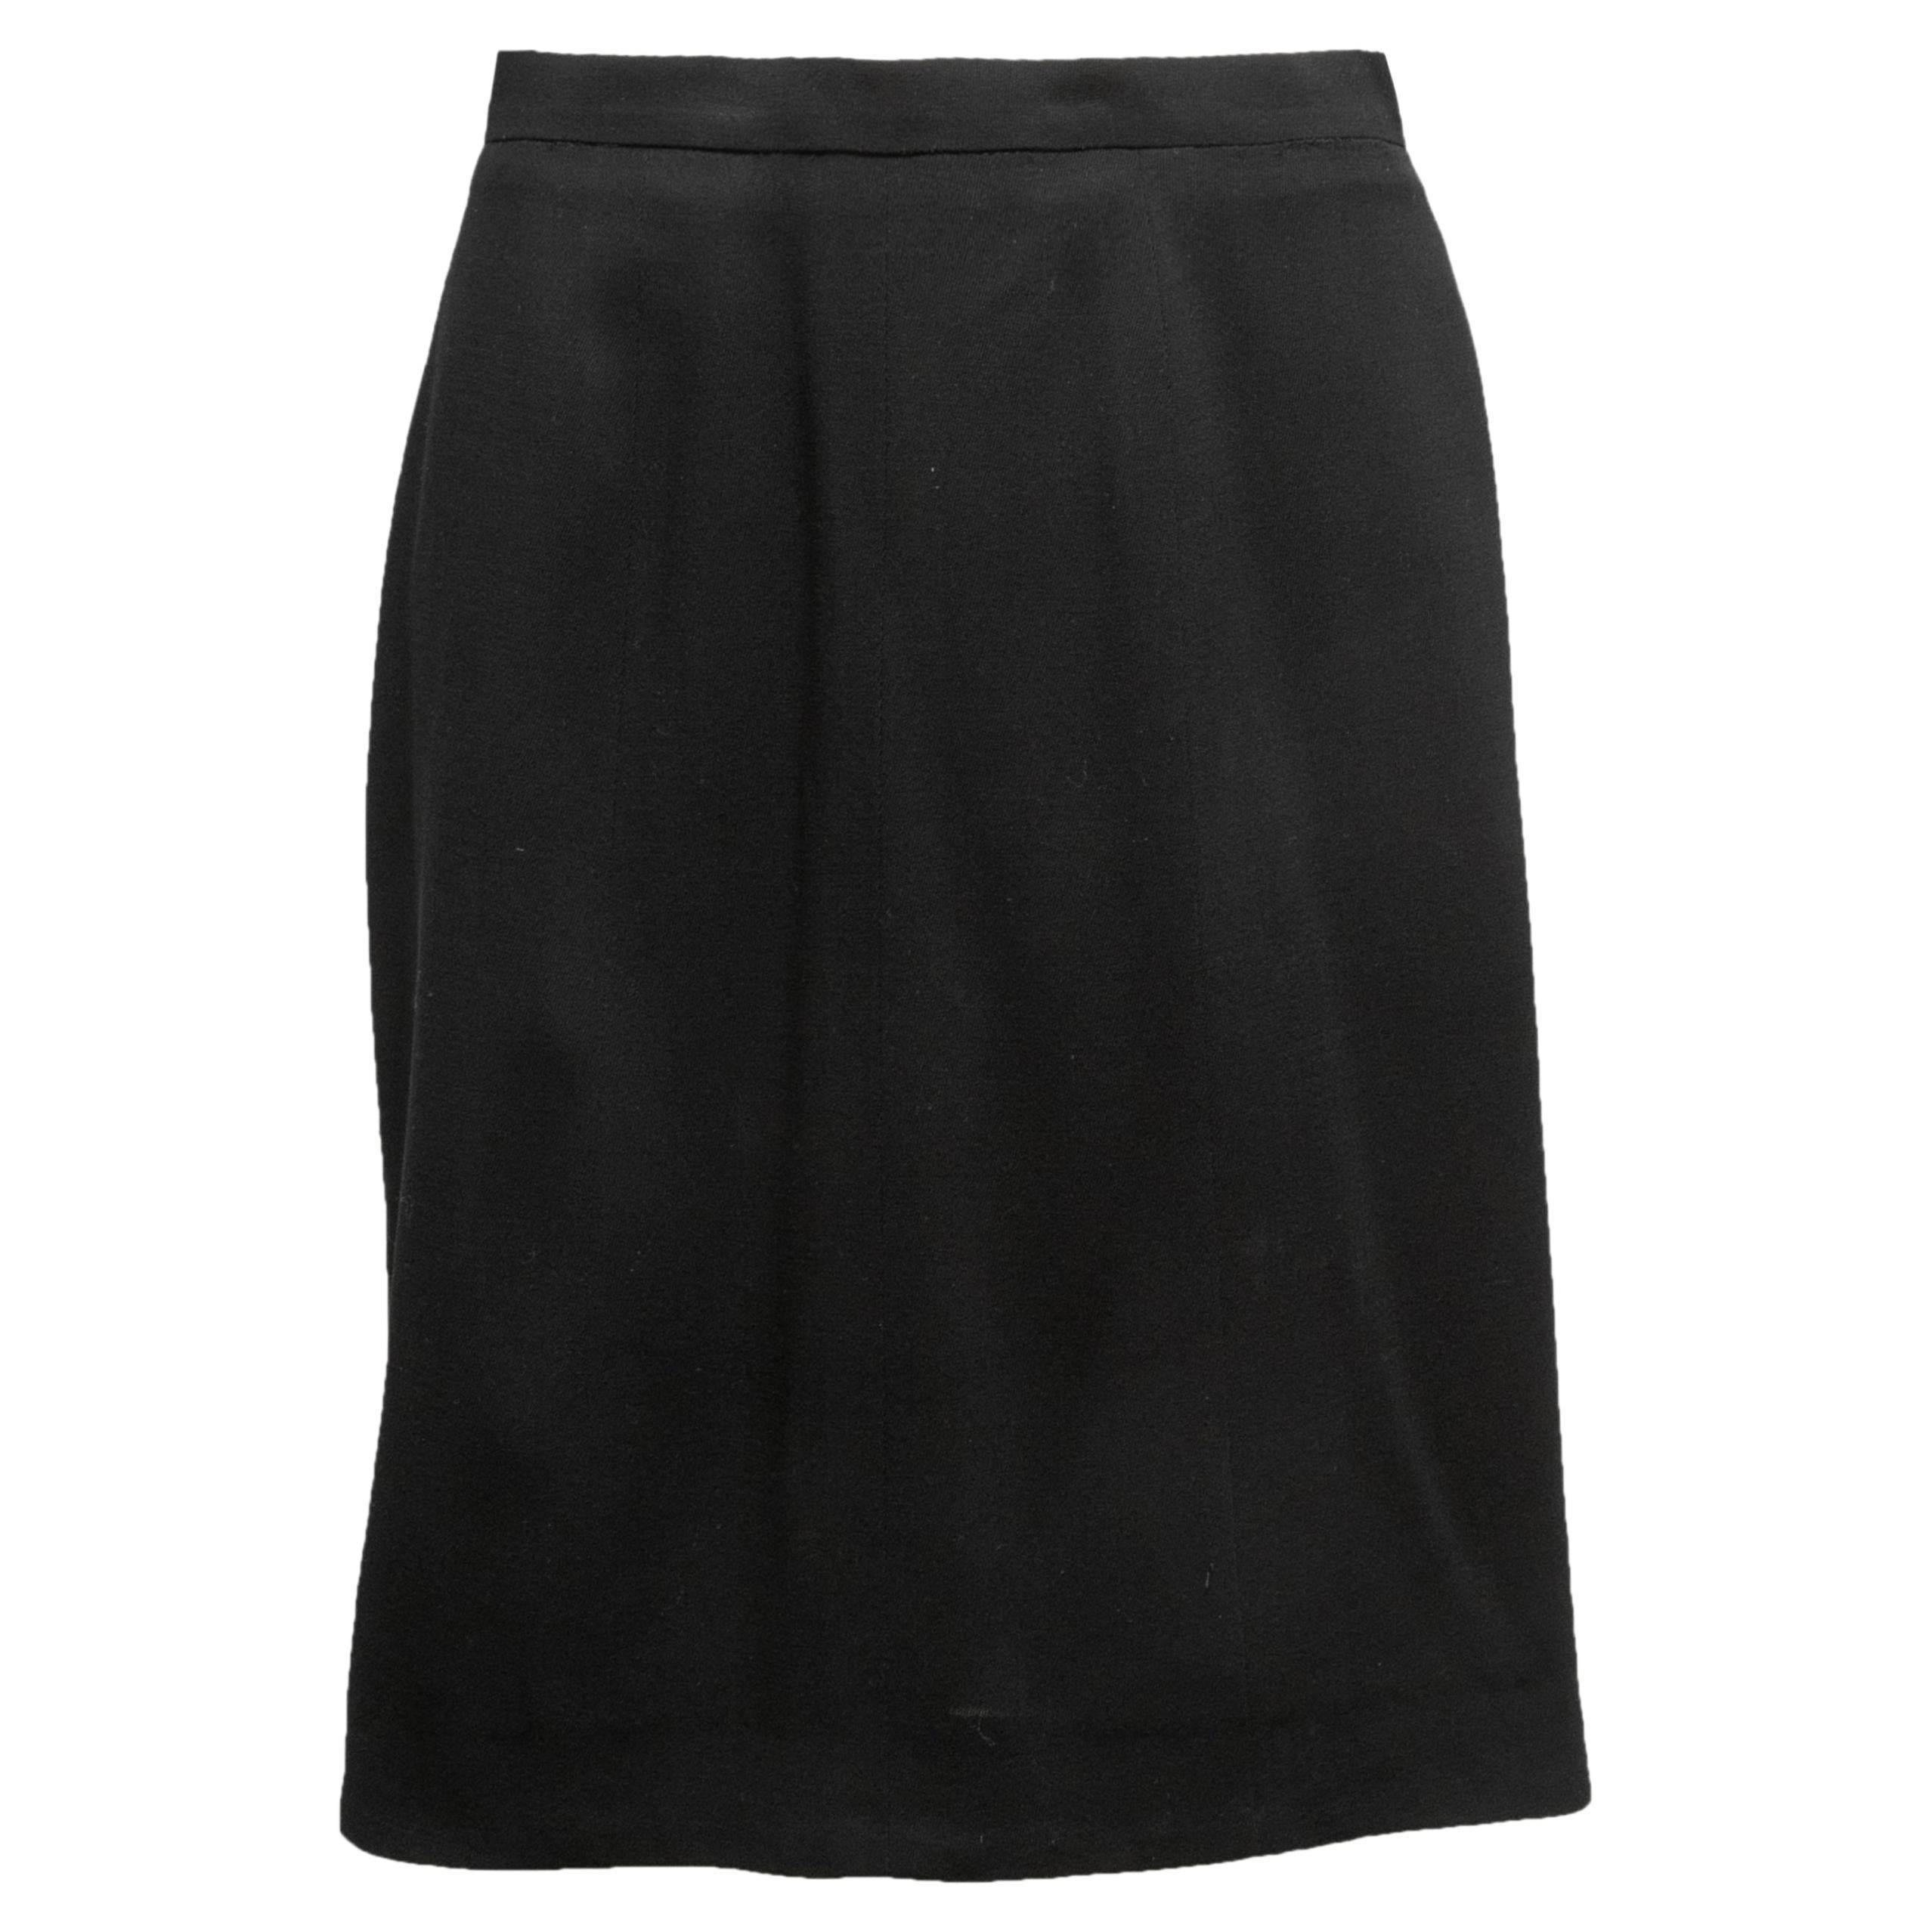 Who were skirts originally made for?